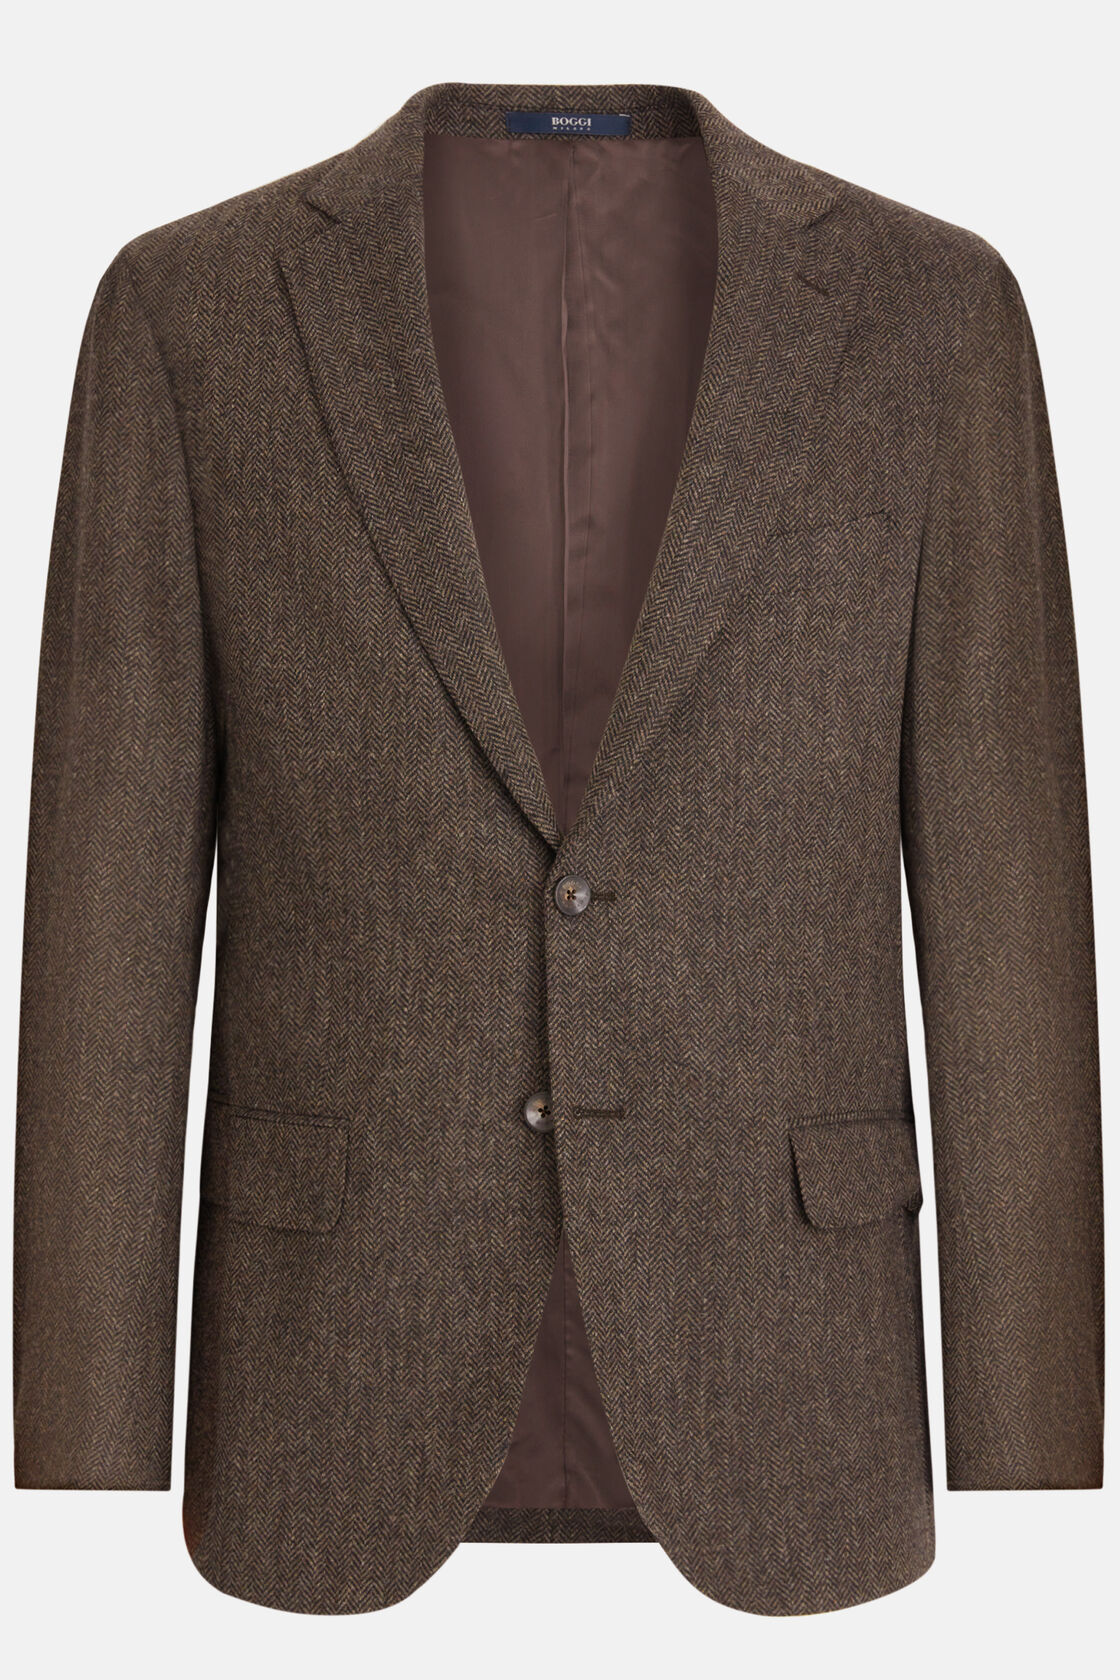 Brown Jacket in Herringbone Weave Wool, Brown, hi-res